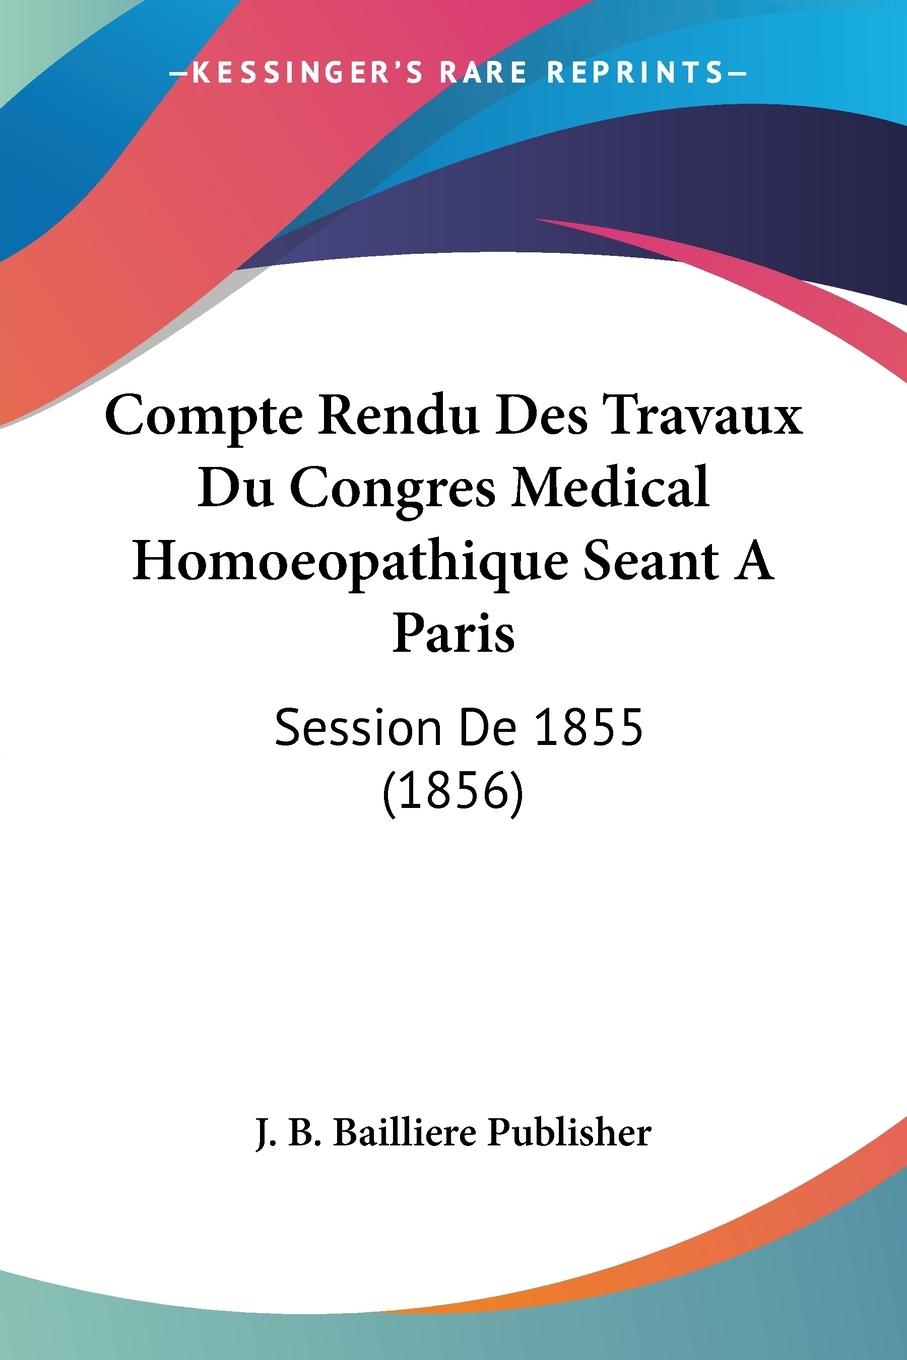 Compte Rendu Des Travaux Du Congres Medical Homoeopathique Seant A Paris - J. B. Bailliere Publisher